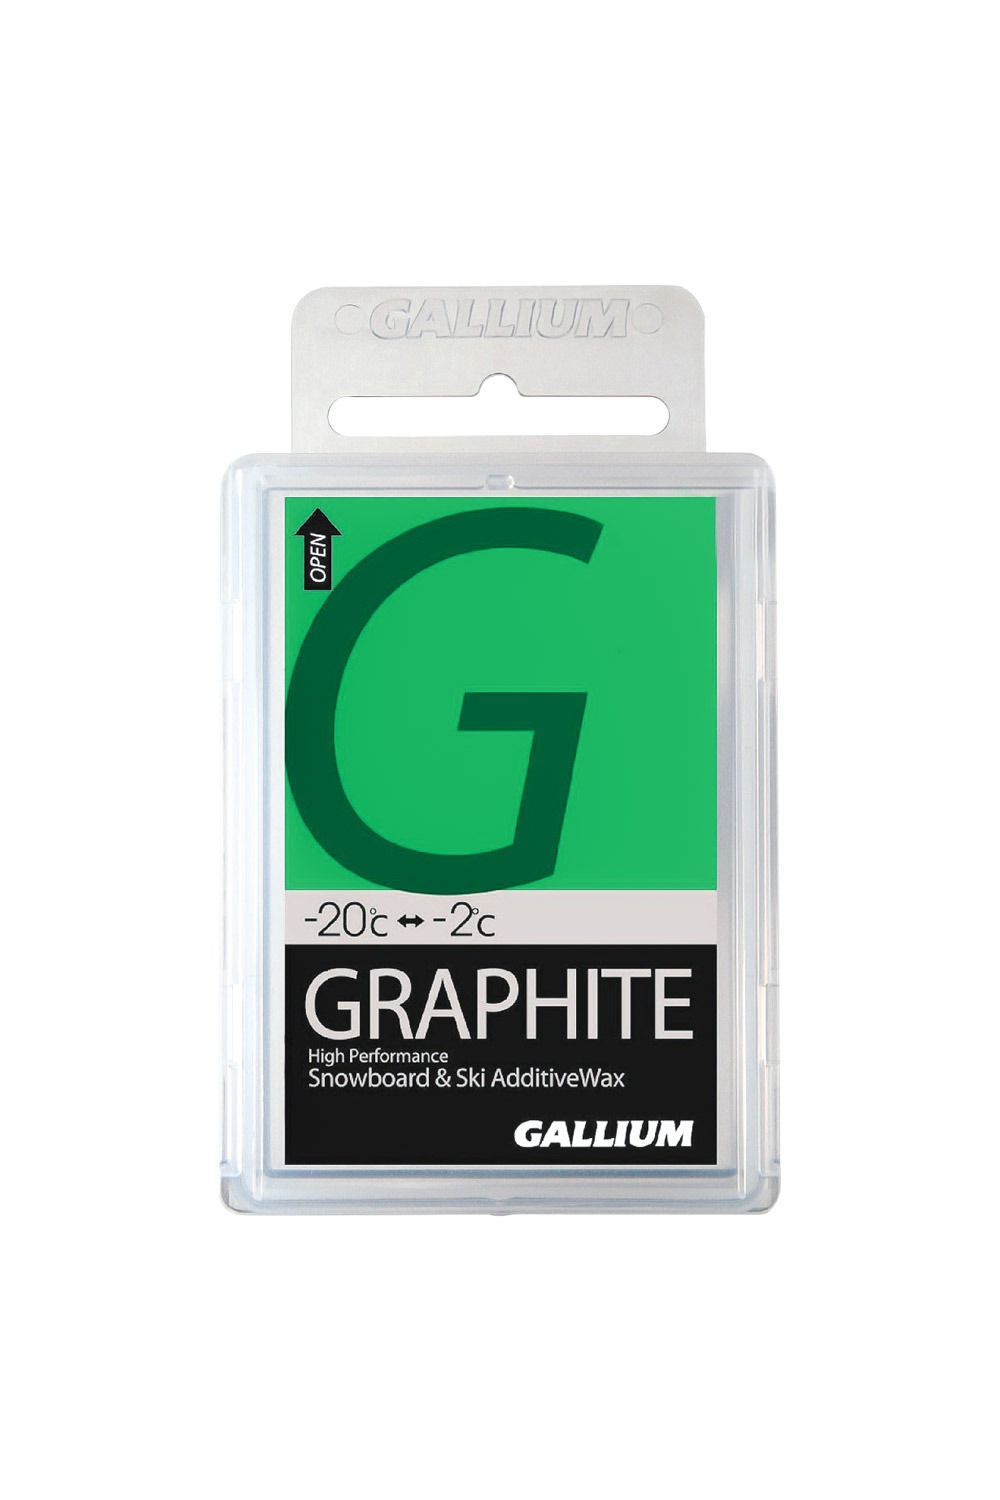 갈륨왁스 그라파이트 -추가왁스 GALLIUM WAX GRAPHITE (50g)/GALLIUM WAX GRAPHITE (50g)/SW2021_HGZ60500_DHGZ60500